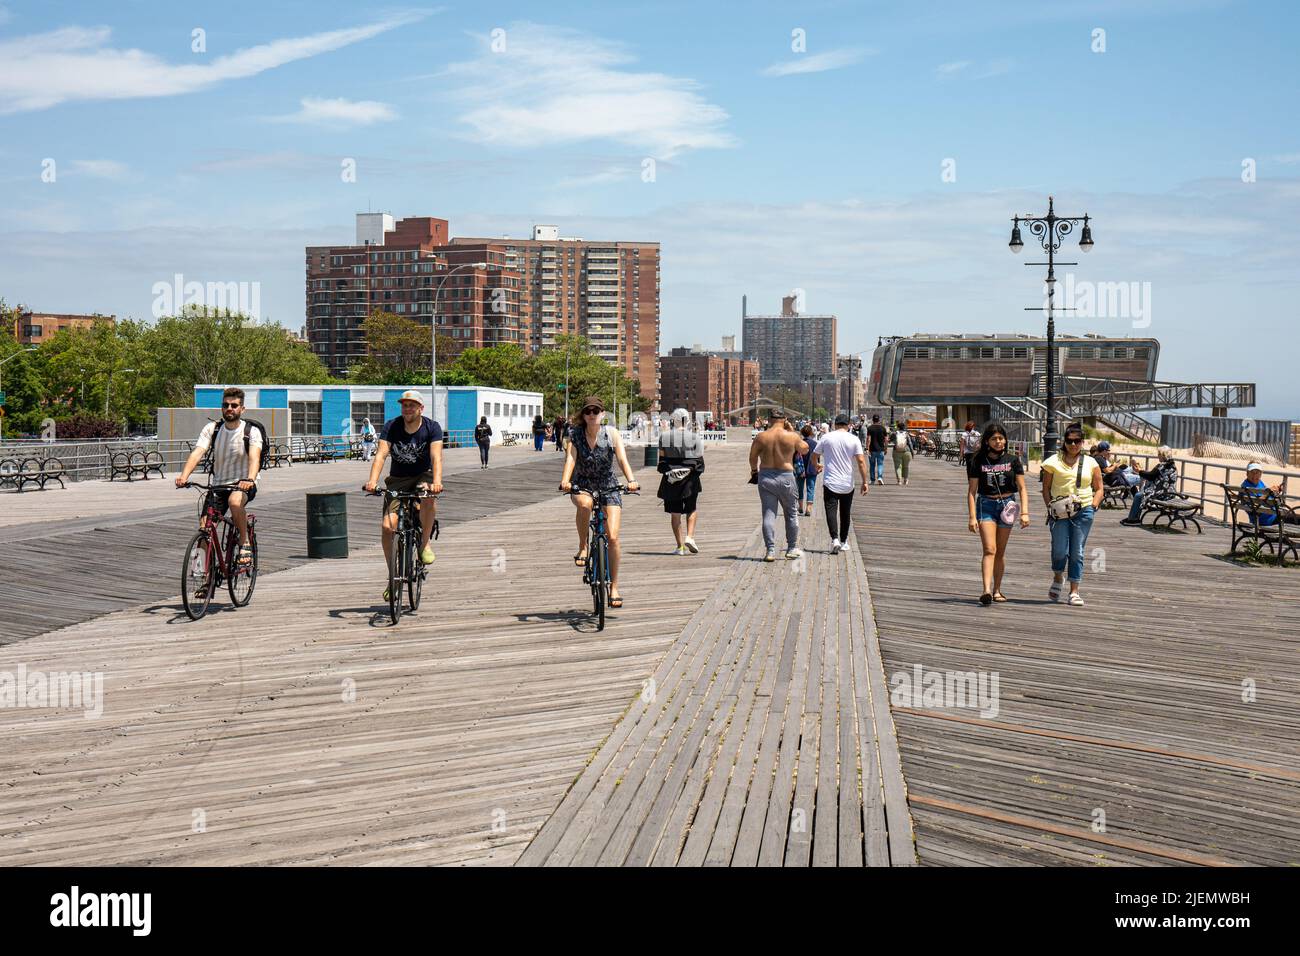 Les gens qui font du vélo sur la promenade Riegelmann Boardwalk dans le quartier de Coney Island à Brooklyn, New York City, États-Unis d'Amérique Banque D'Images